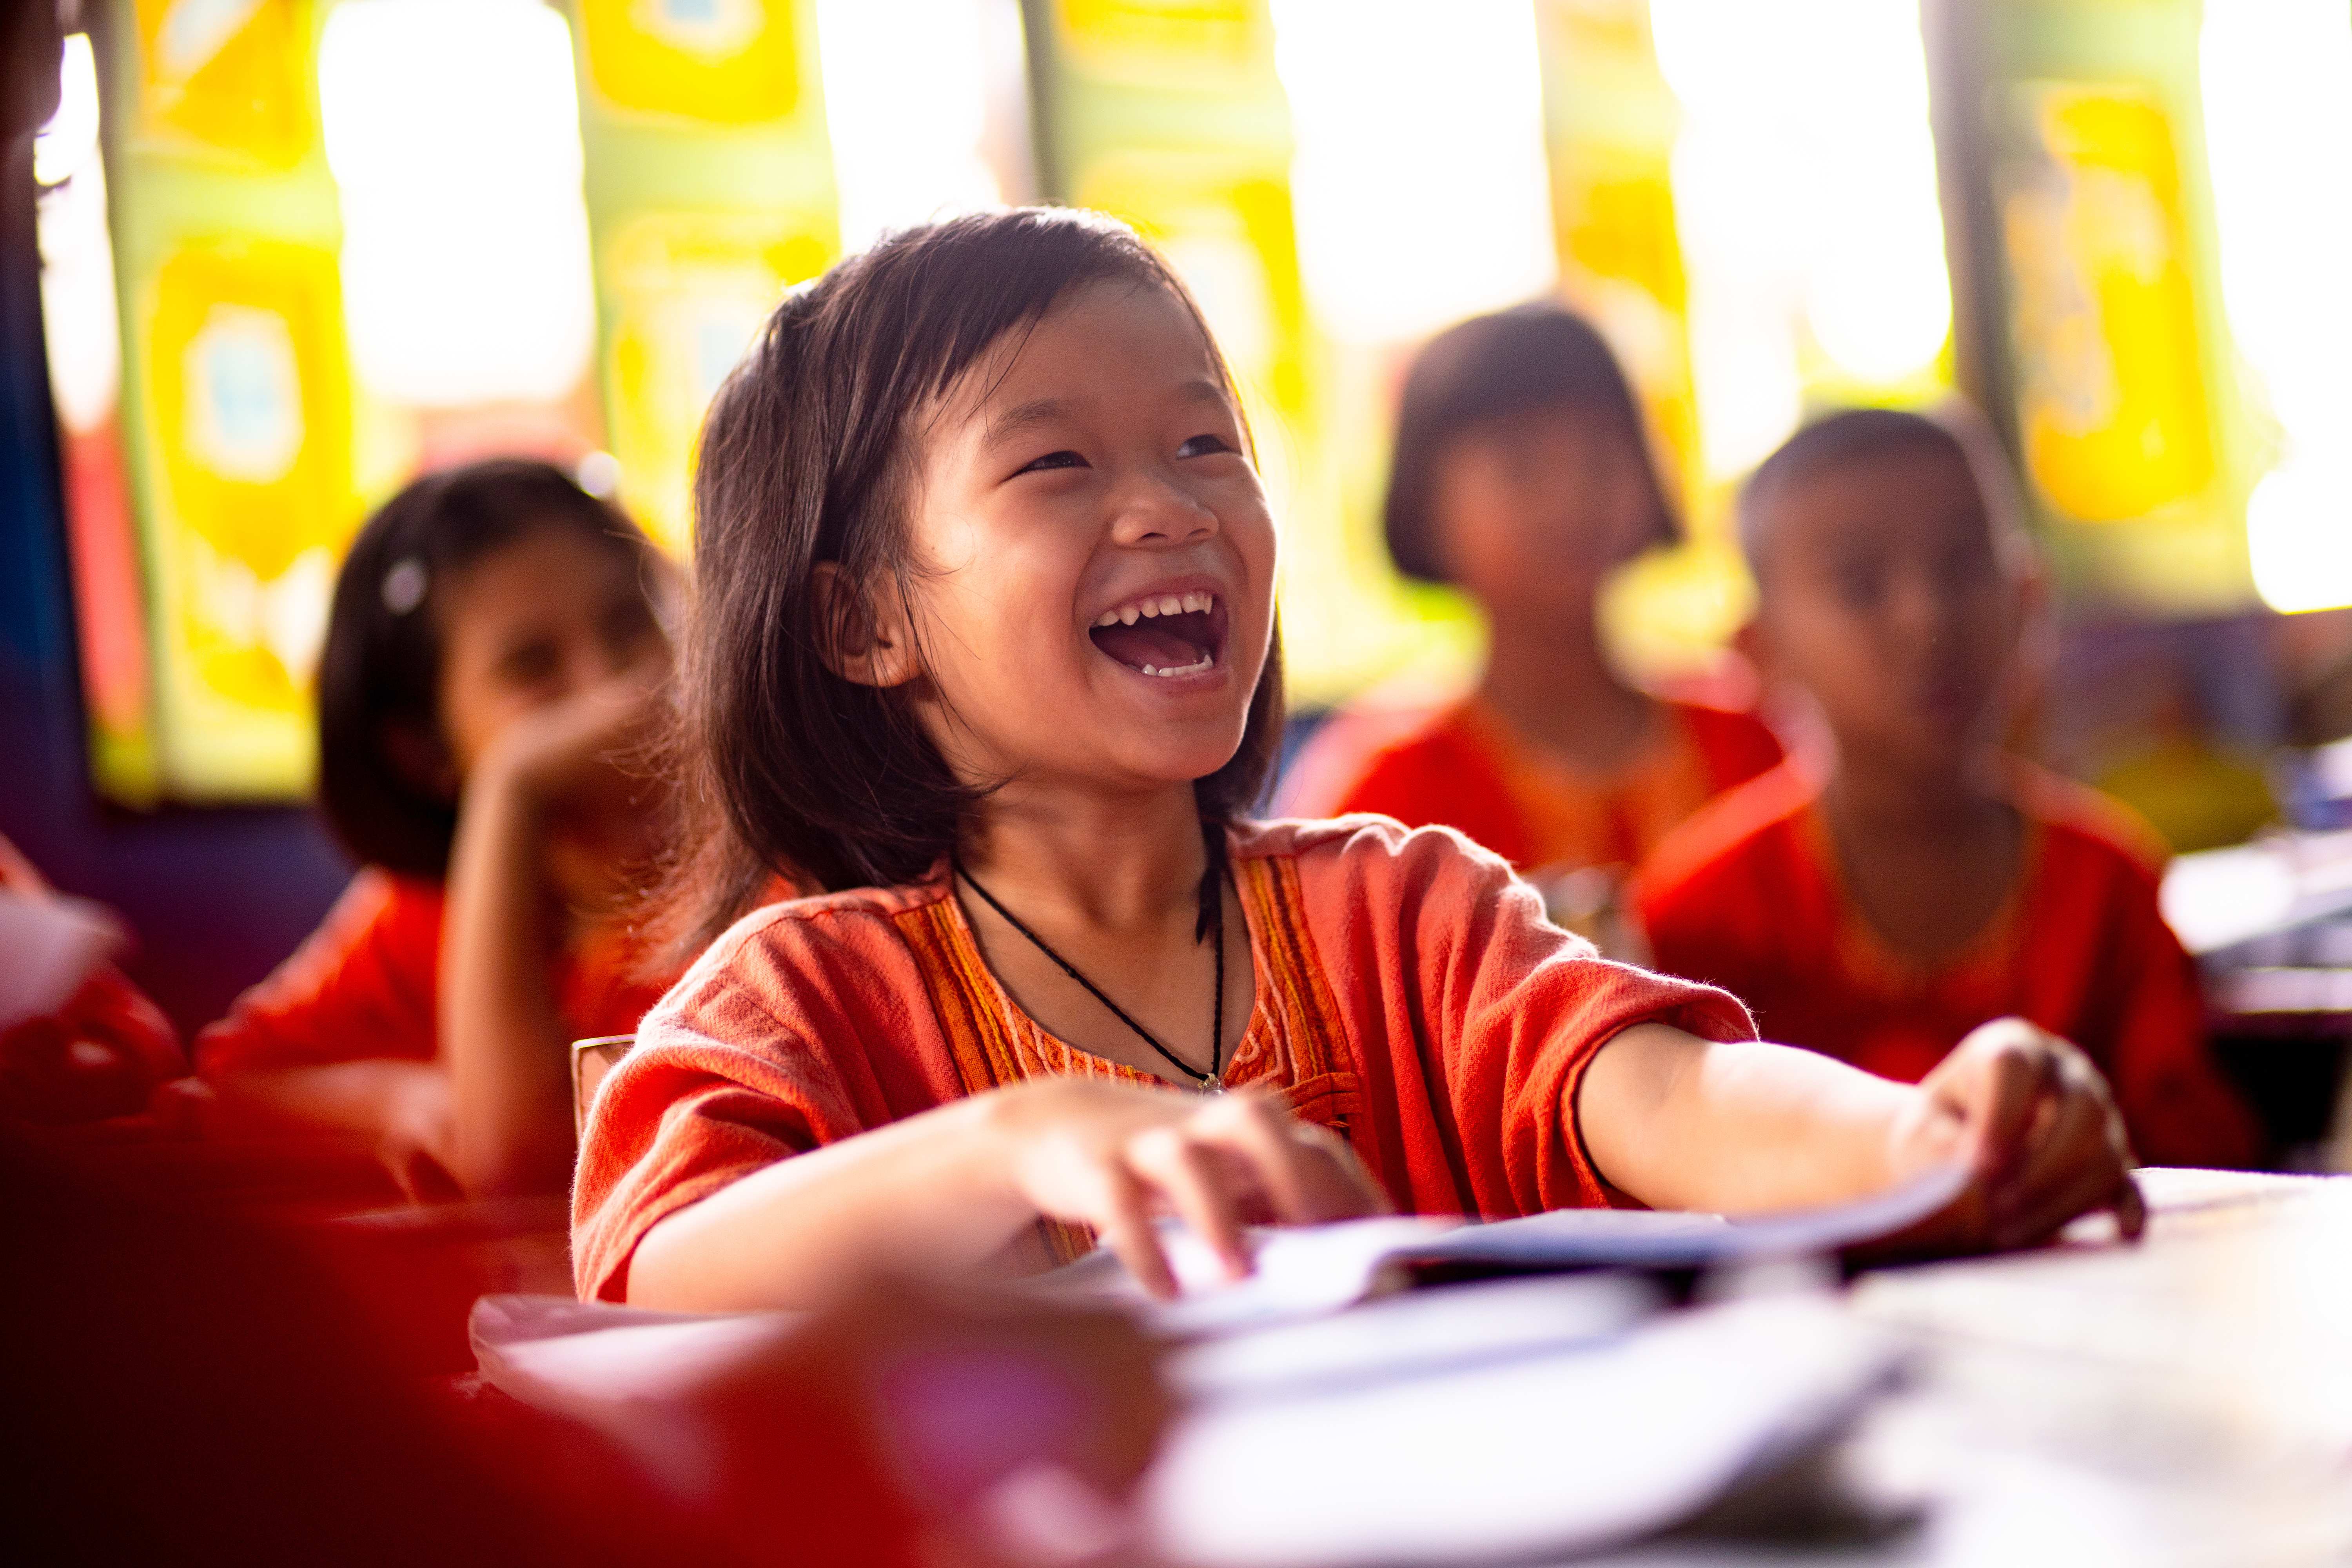 Lachende Schülerin in einem Kindernothilfe-Projekt in Thailand (Quelle: Jakob Studnar)